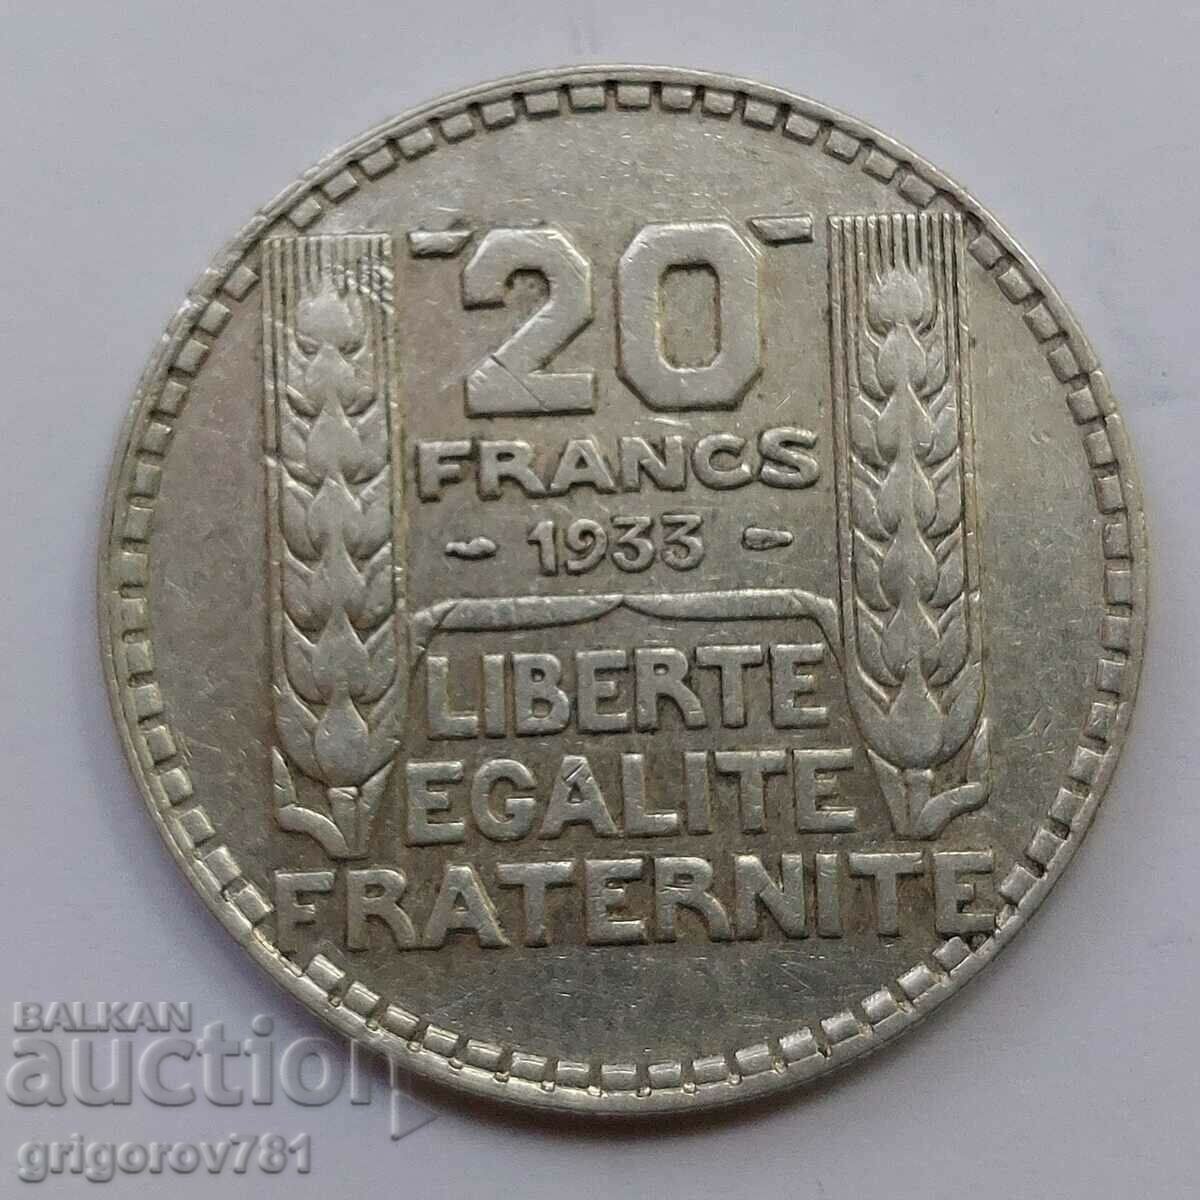 20 Franci Argint Franta 1933 - Moneda de argint #23